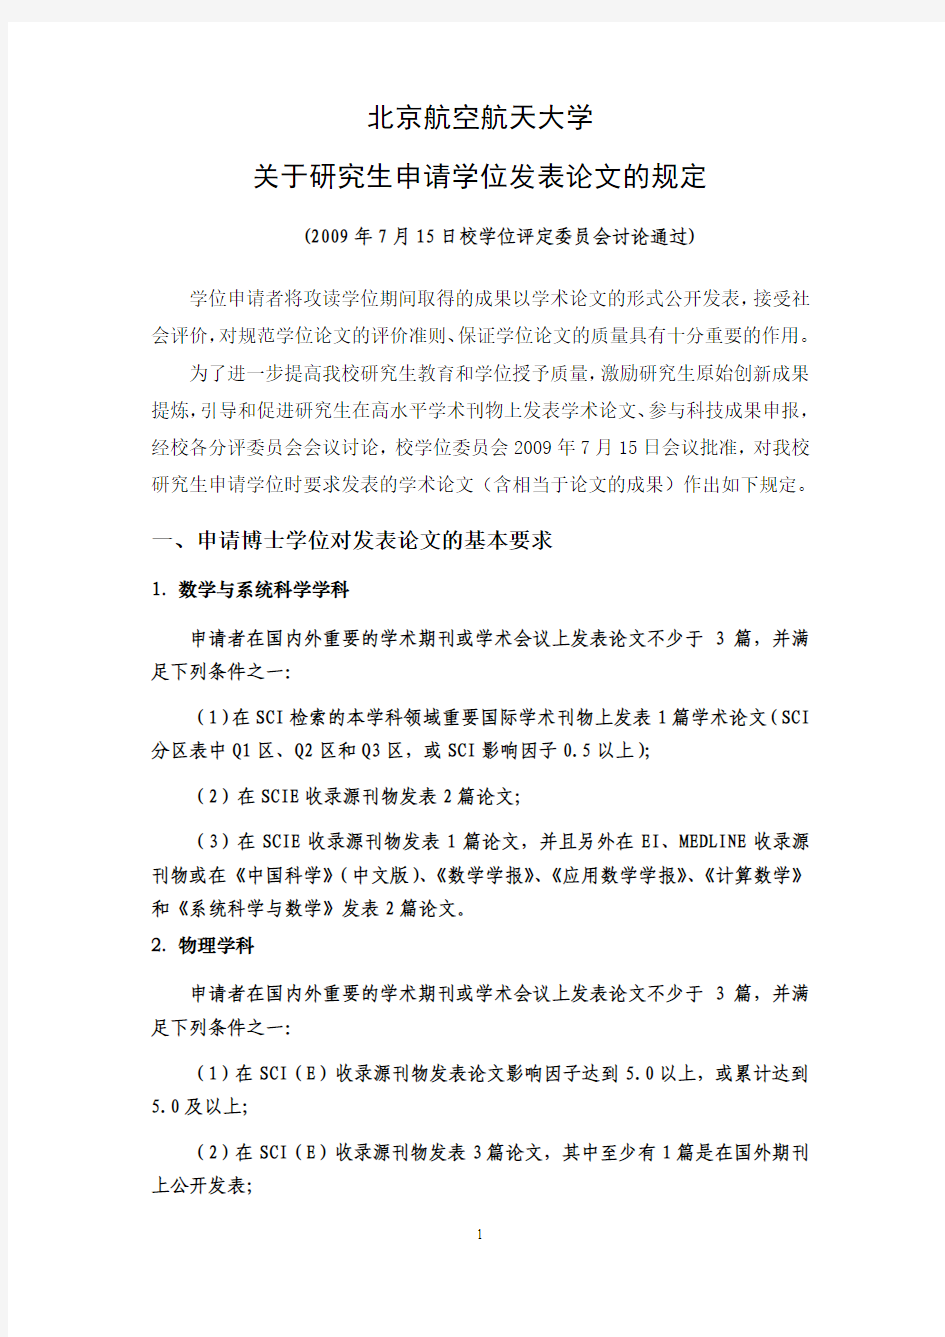 北京航空航天大学关于研究生申请学位发表论文的规定